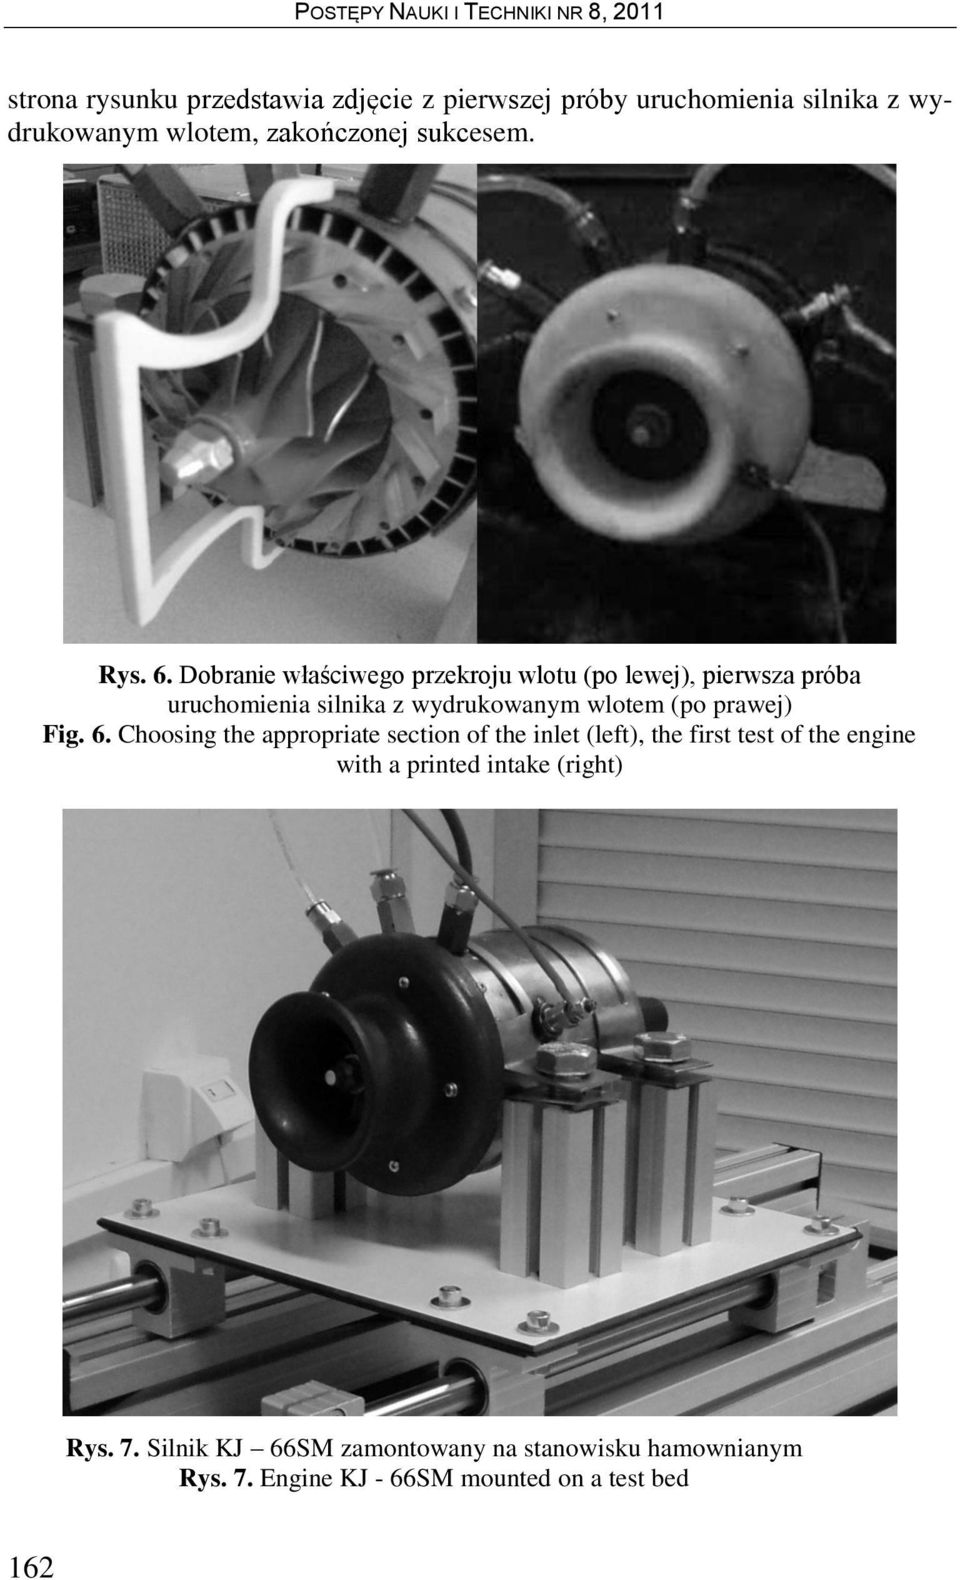 Dobranie właściwego przekroju wlotu (po lewej), pierwsza próba uruchomienia silnika z wydrukowanym wlotem (po prawej)